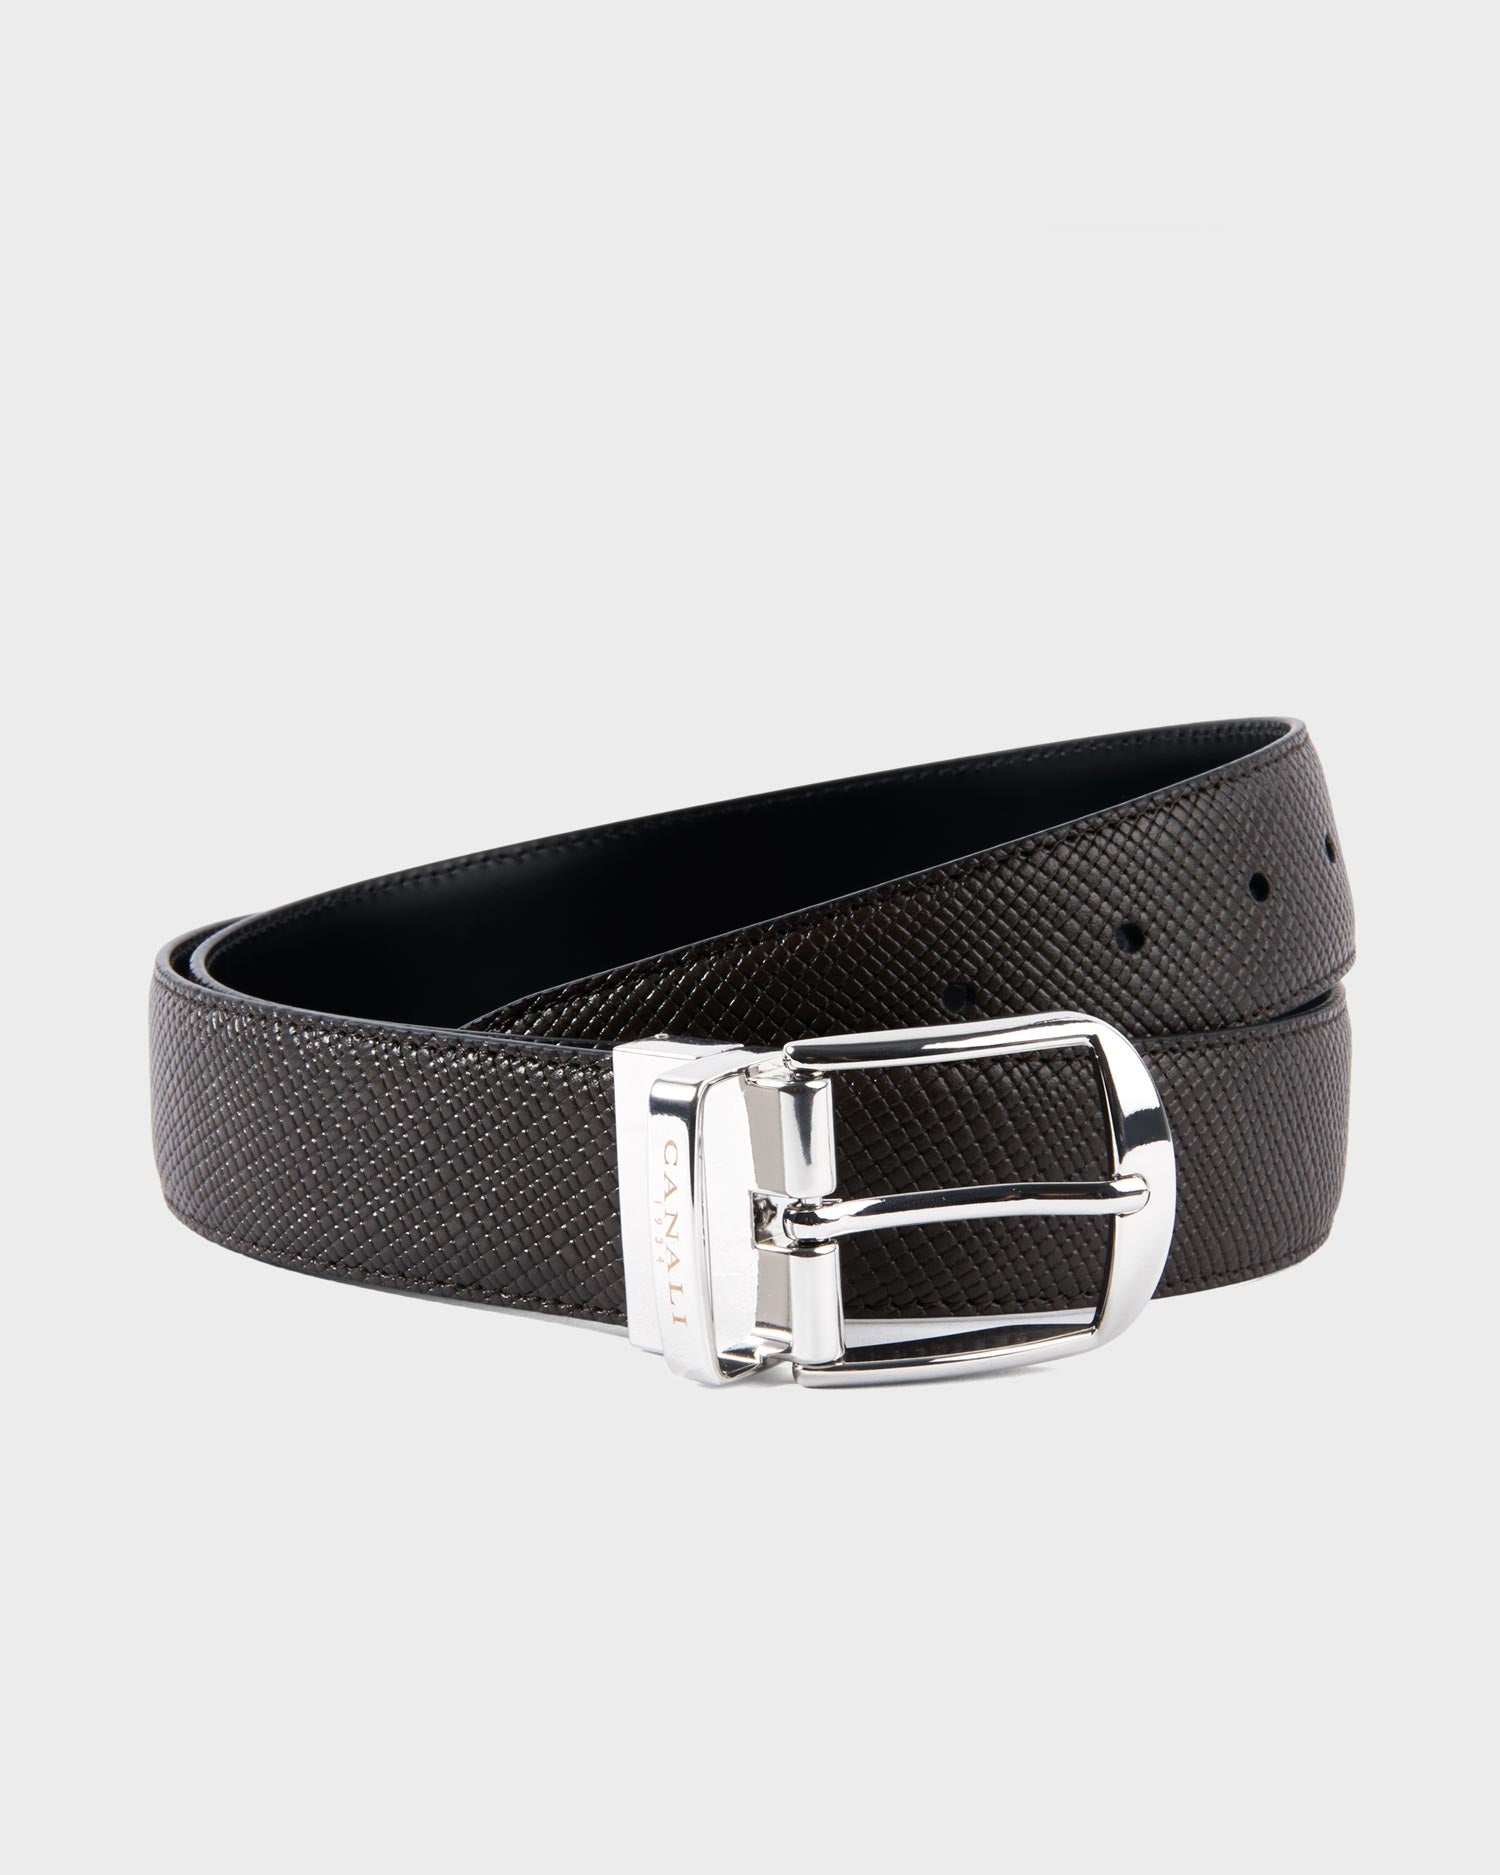 Belts– Parker & Co.